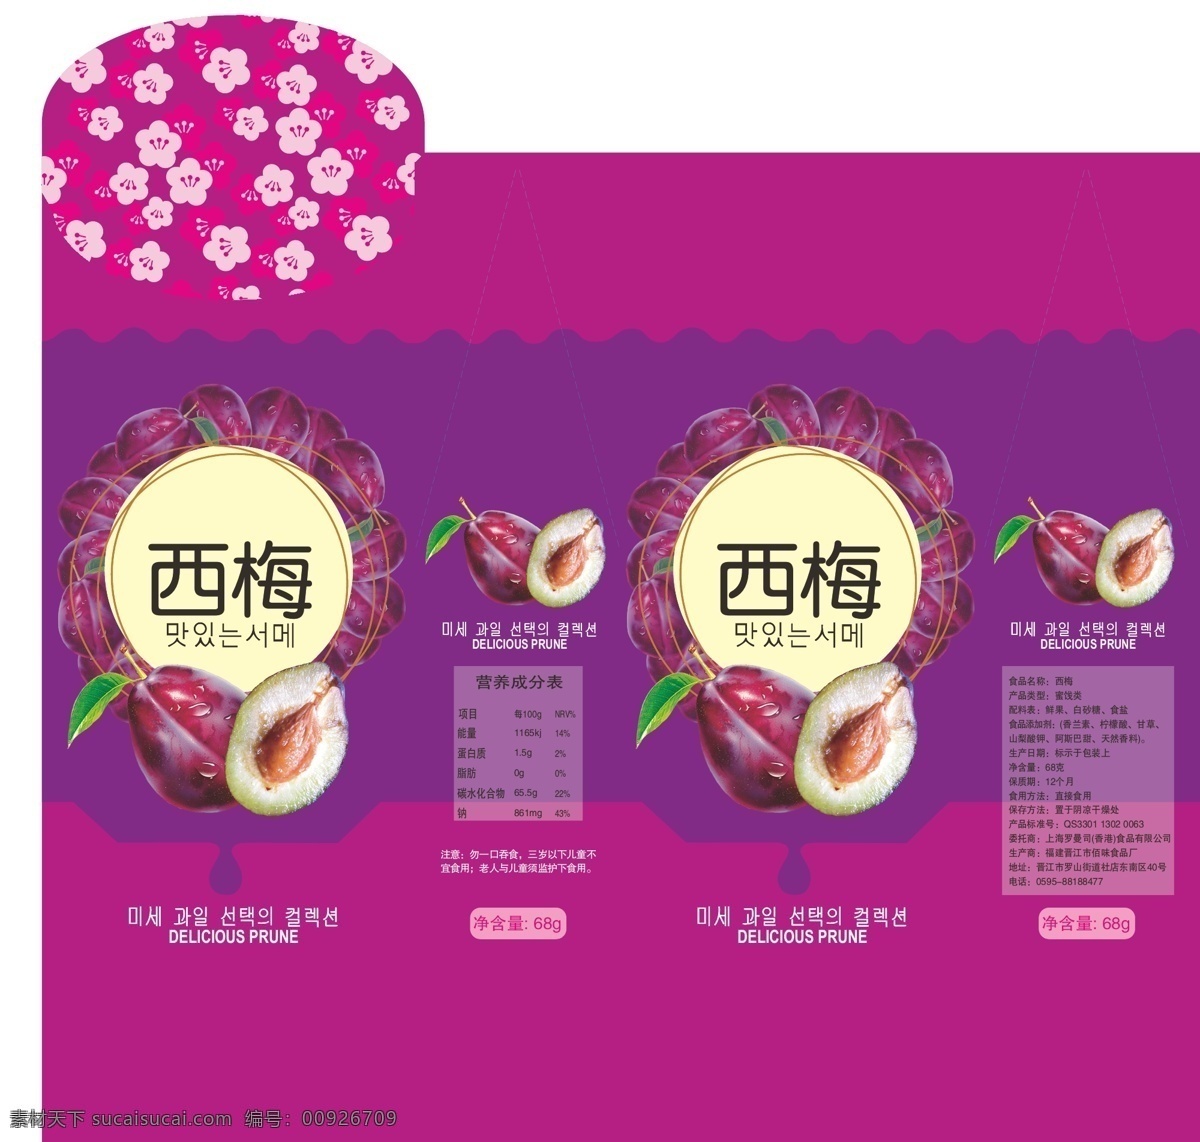 西梅食品盒 广告 设计印刷 西梅 食品盒 包装盒 ai矢量文件 包装设计